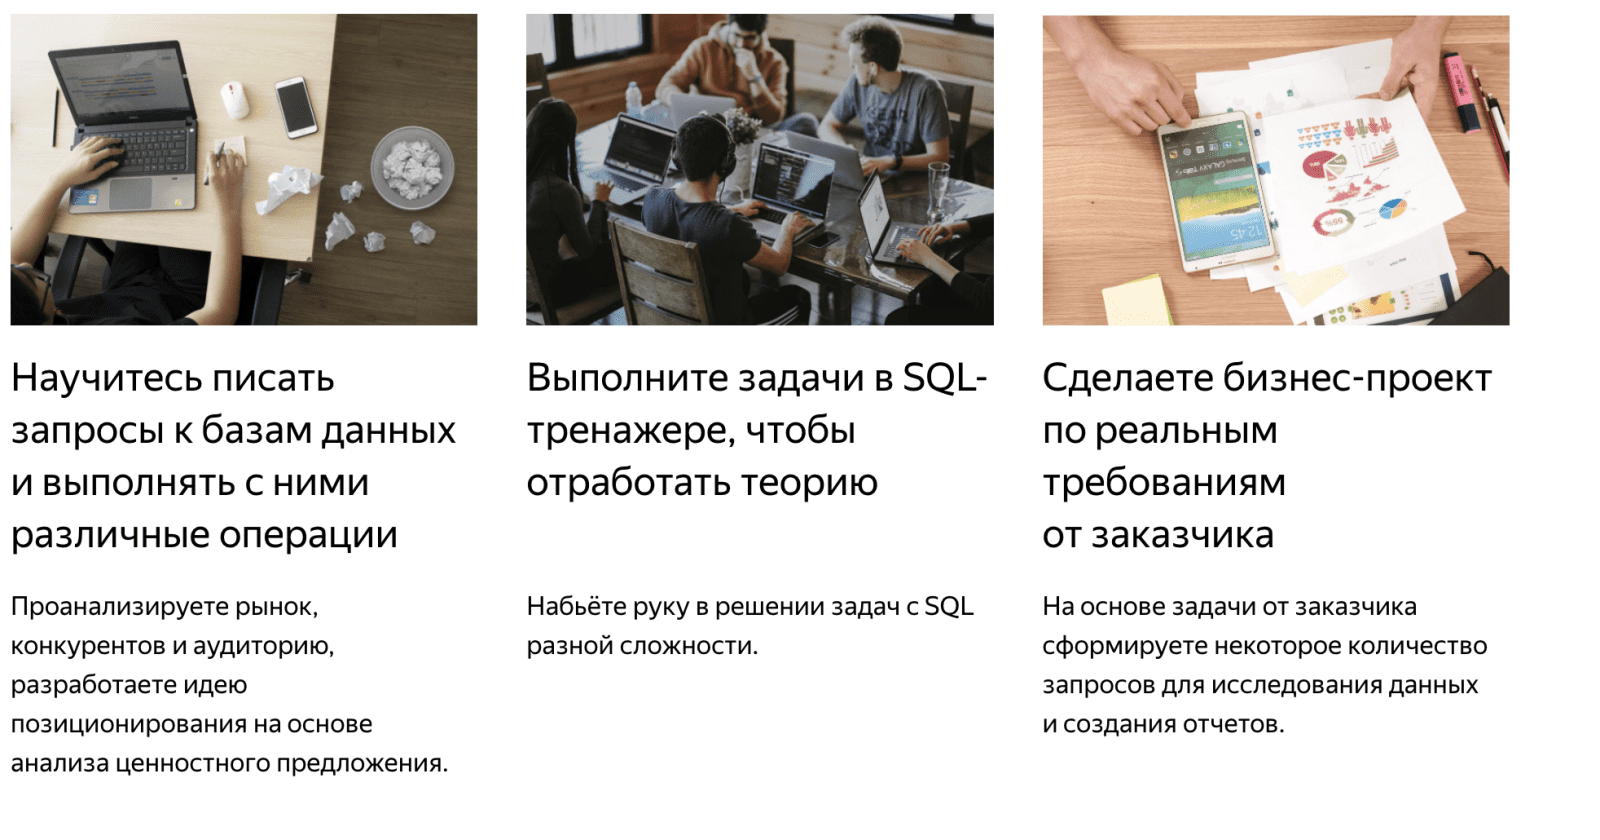 Изображение [Яндекс Практикум] SQL для работы с данными и аналитики 2 часть (2022) в посте 263641